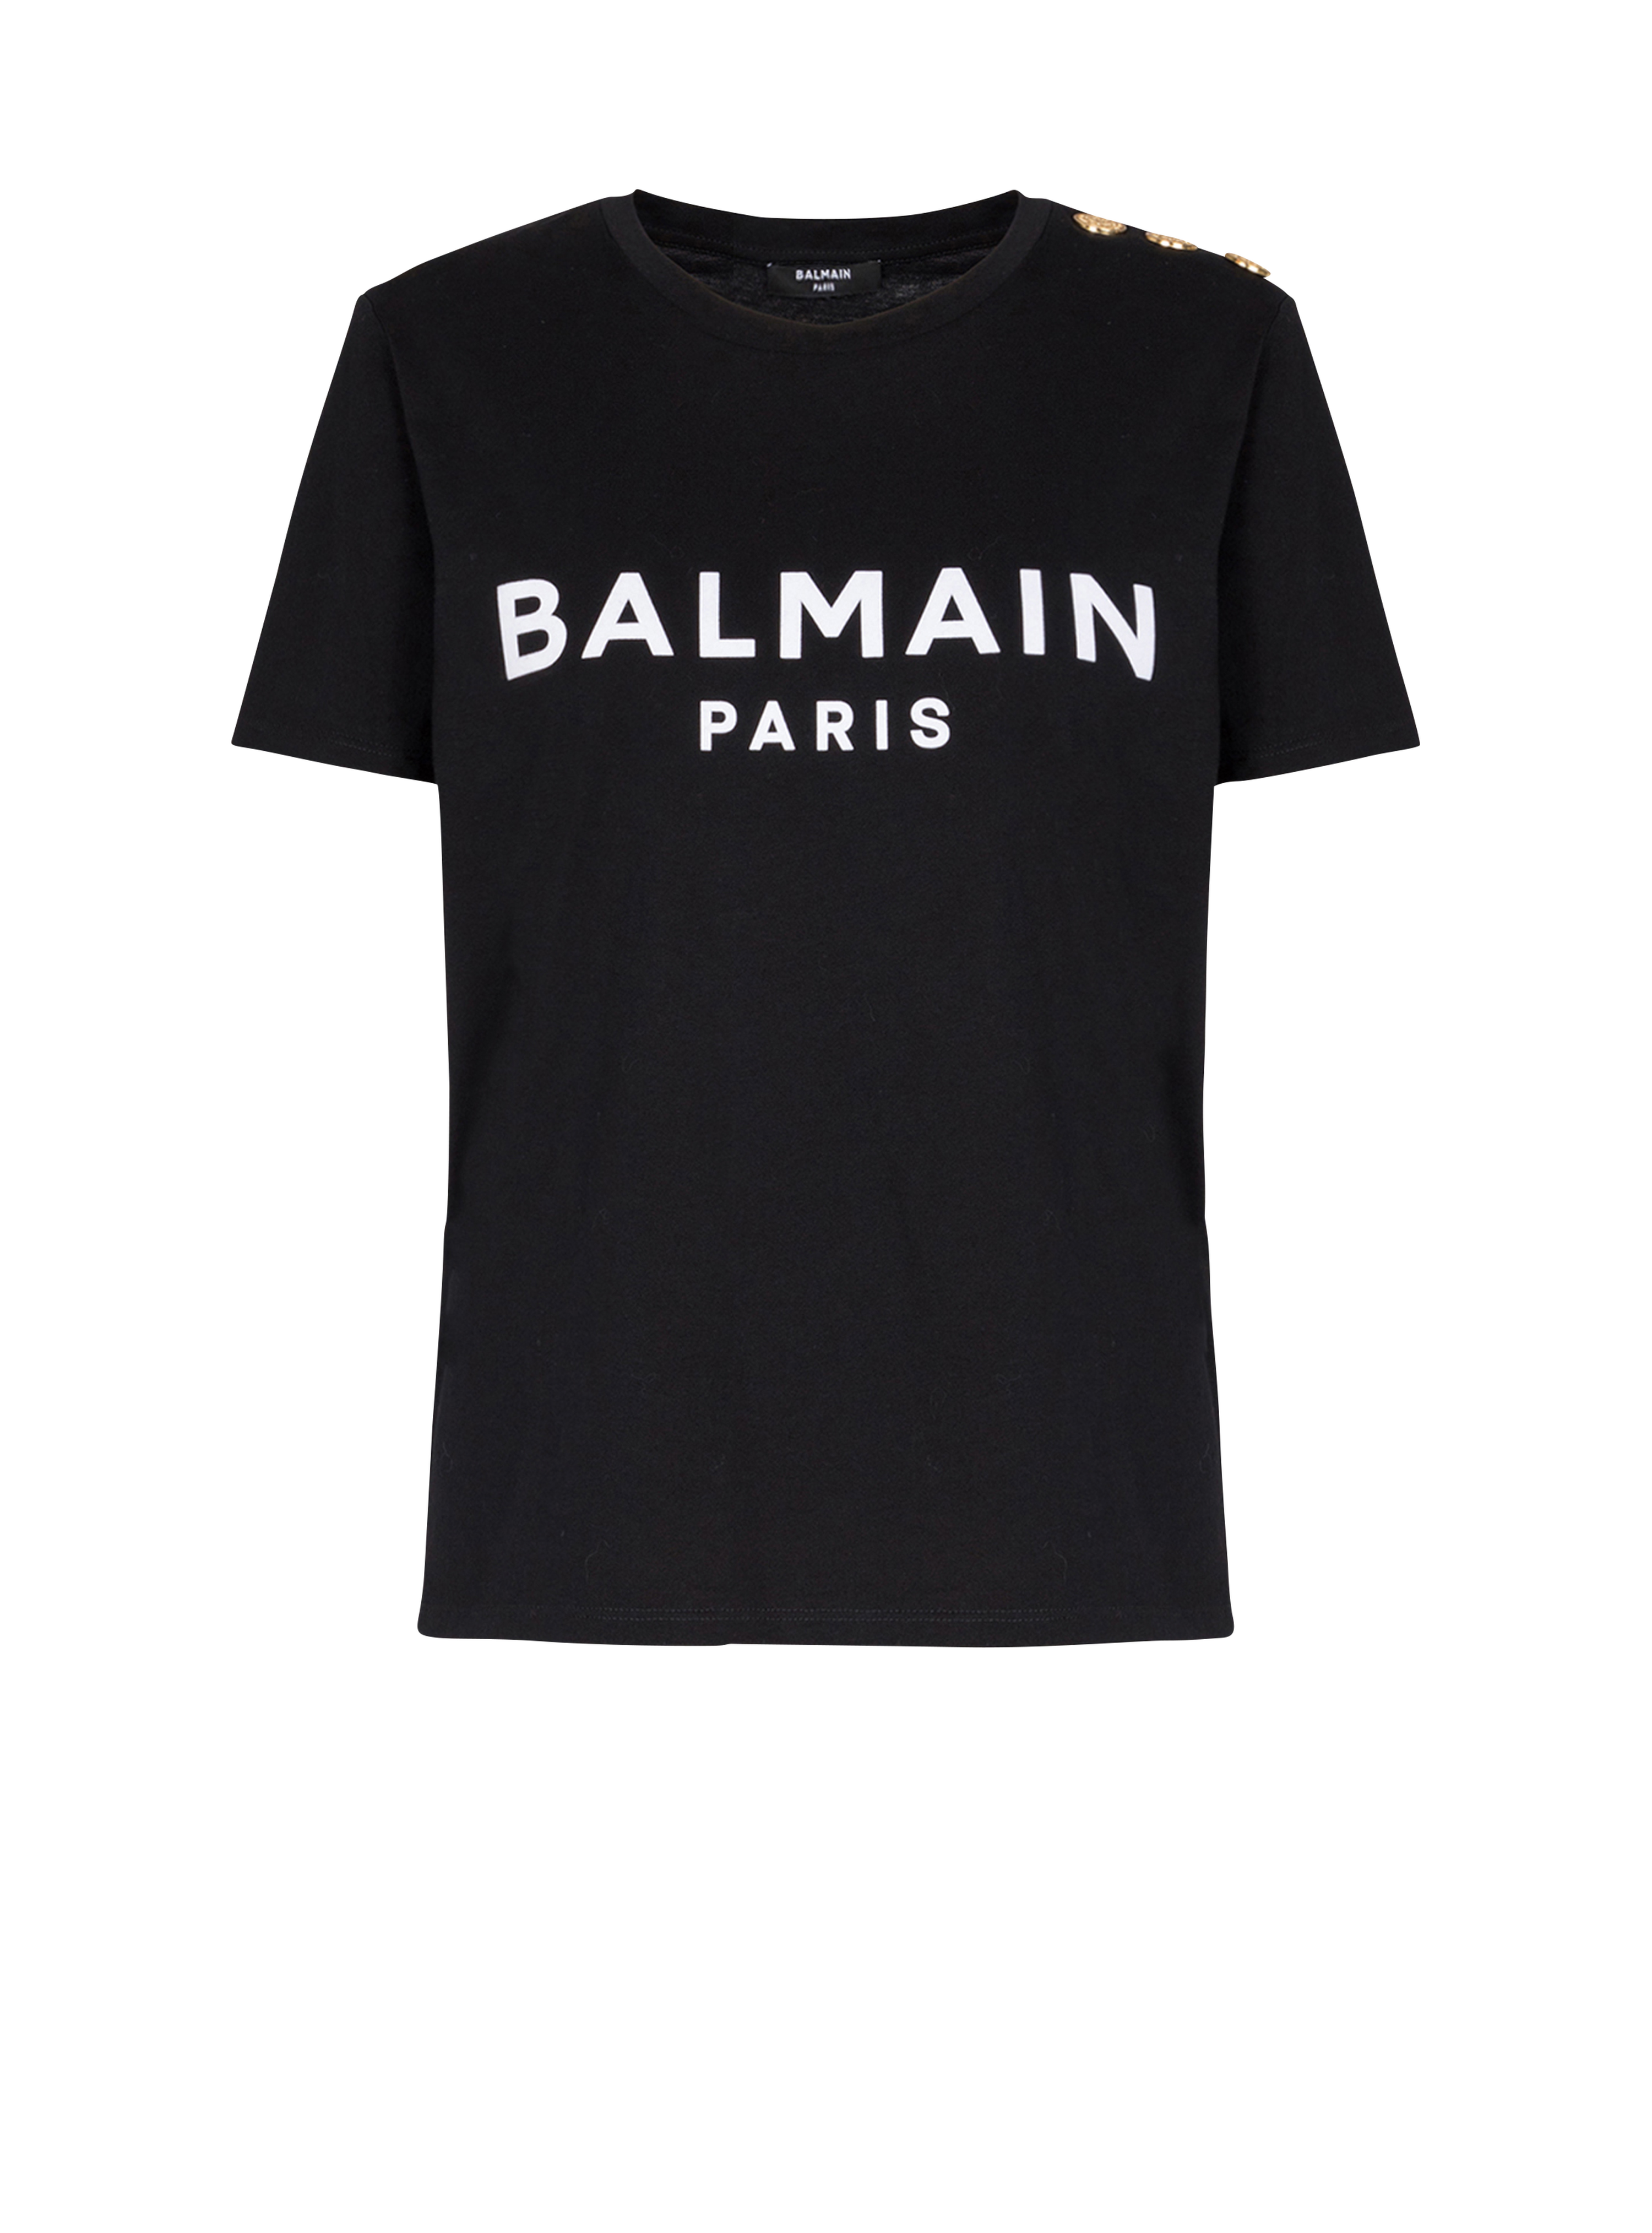 T-shirt in cotone con logo Balmain, nero